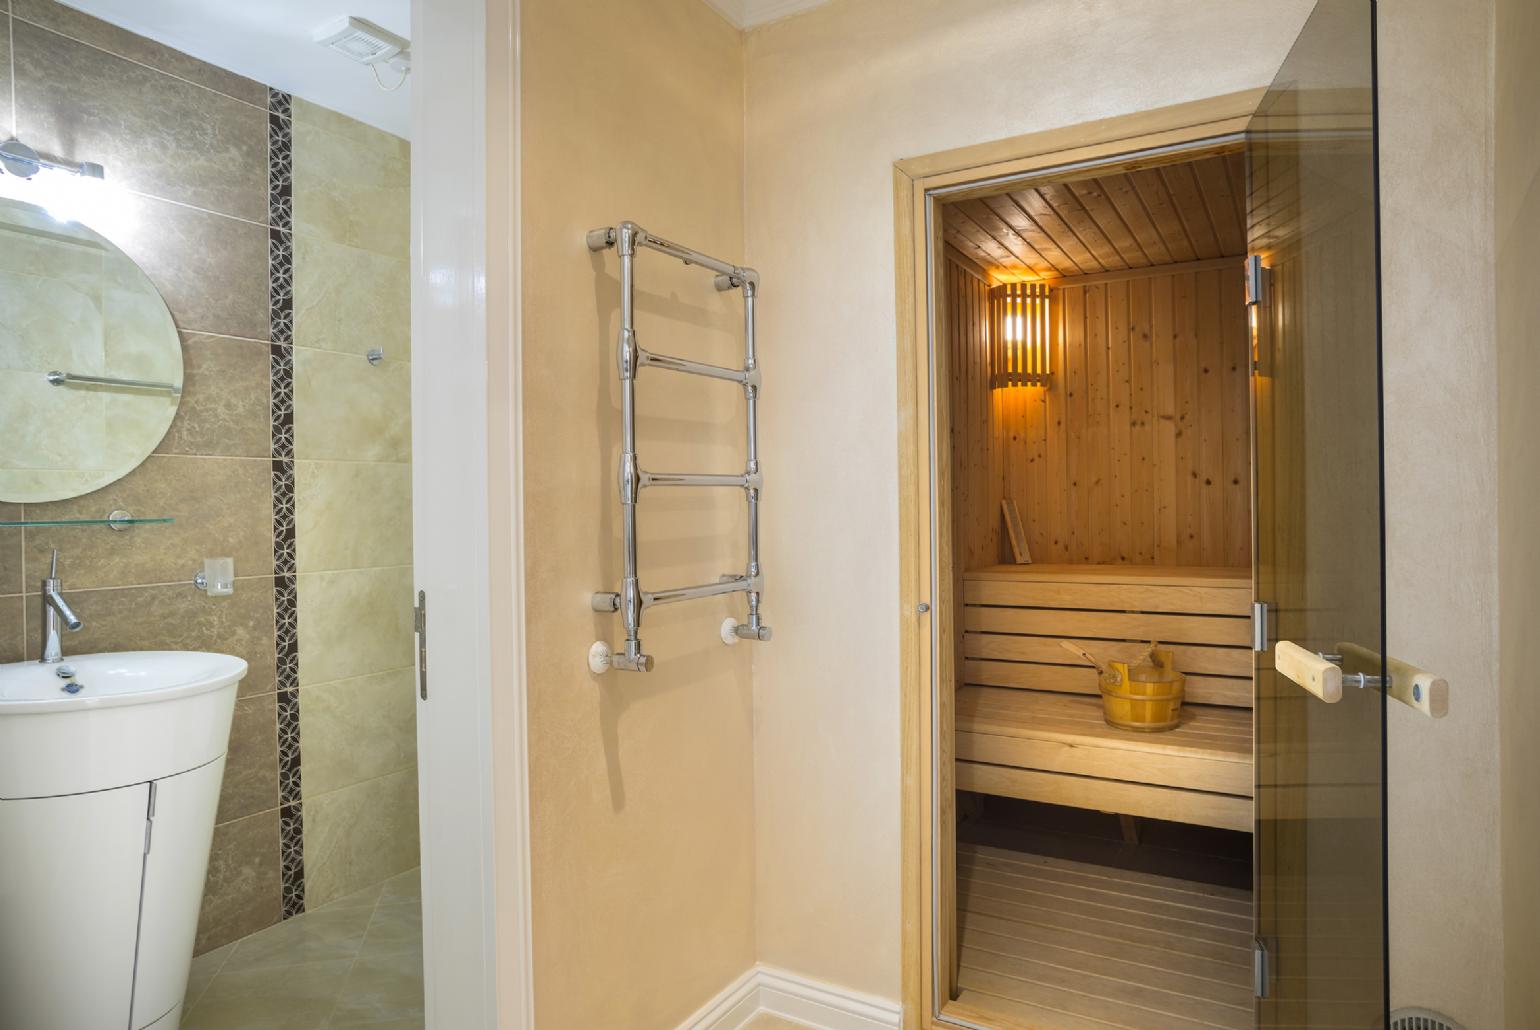 Bathroom with sauna